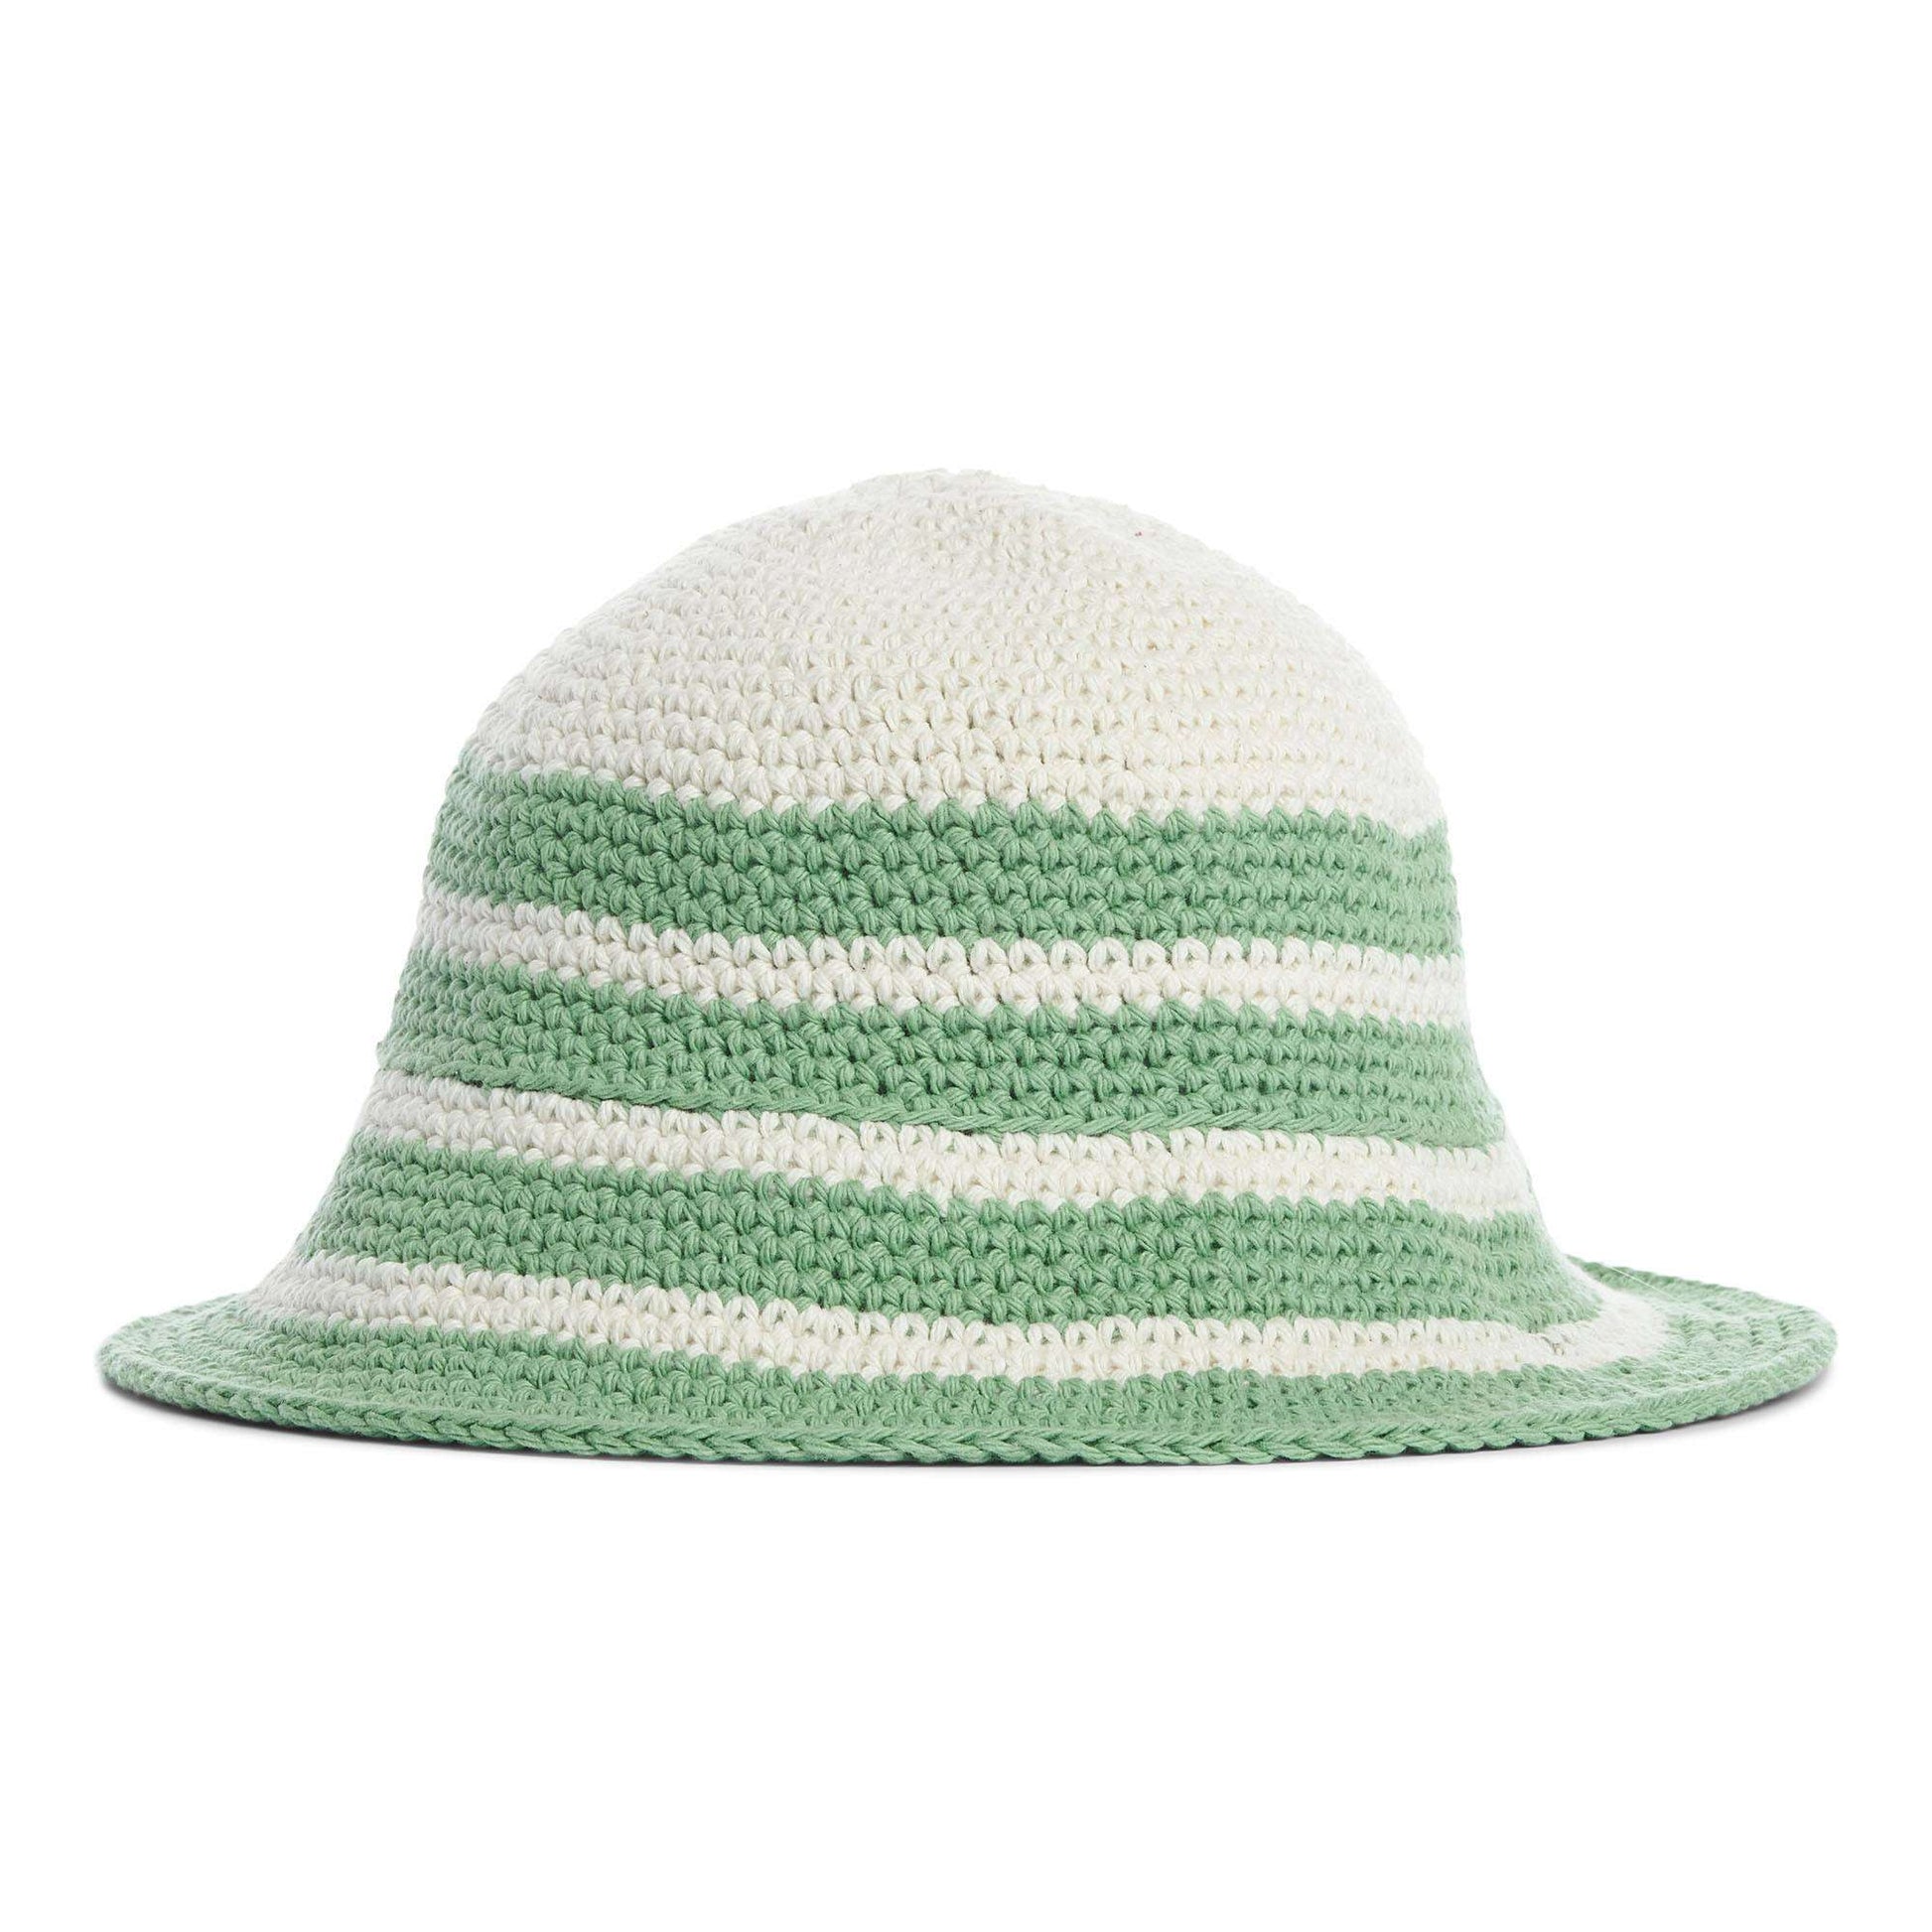 Free Lily Summer Stripes Crochet Bucket Hat Pattern